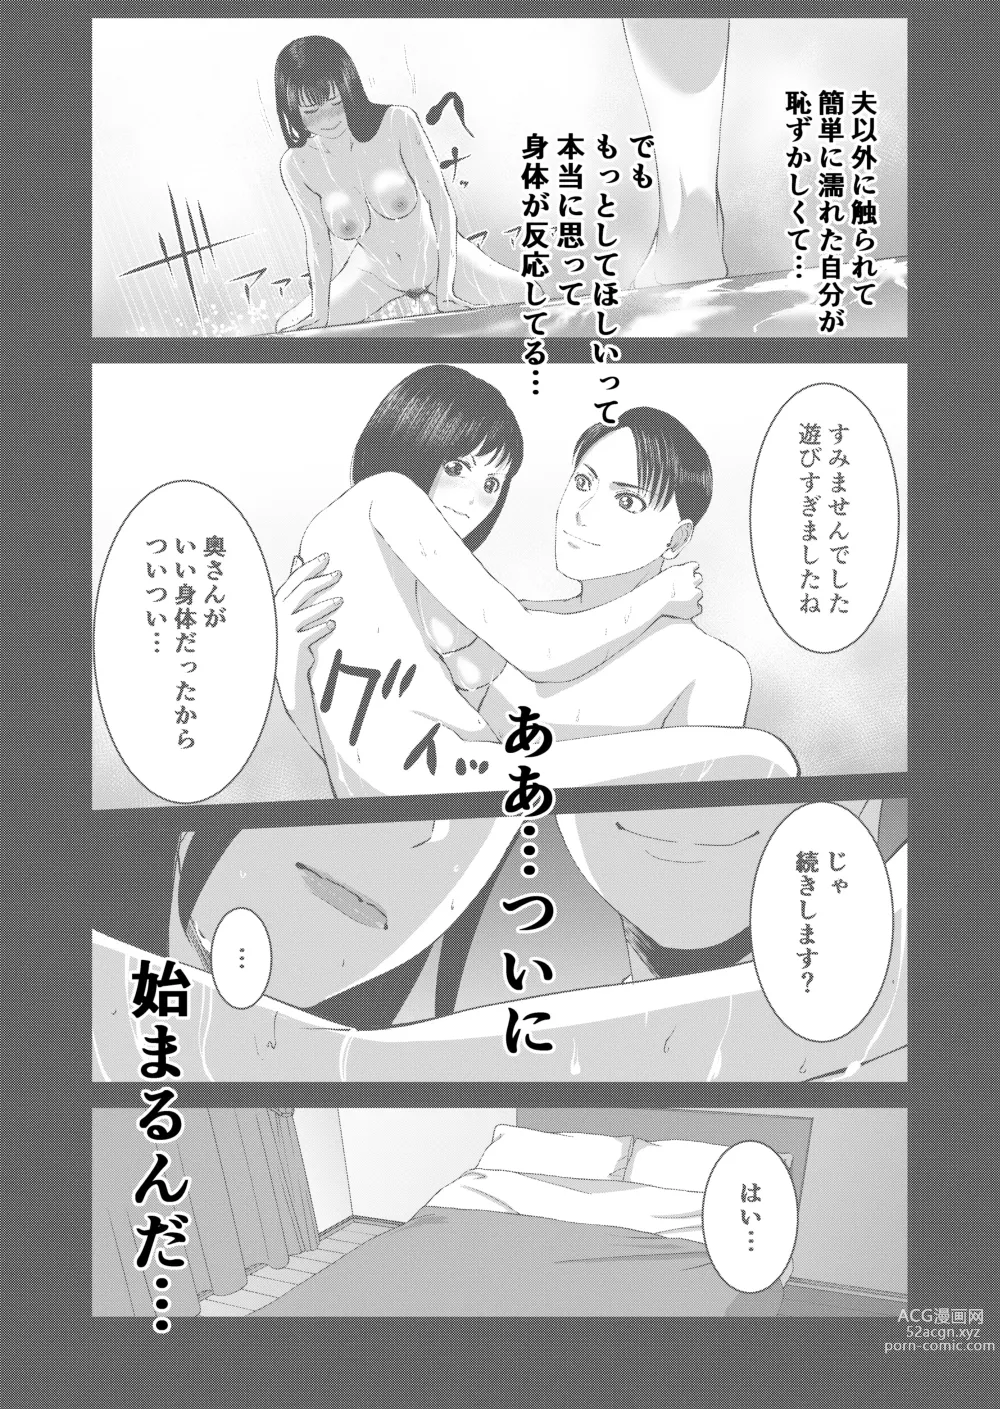 Page 31 of doujinshi Anata no Tame Dakara